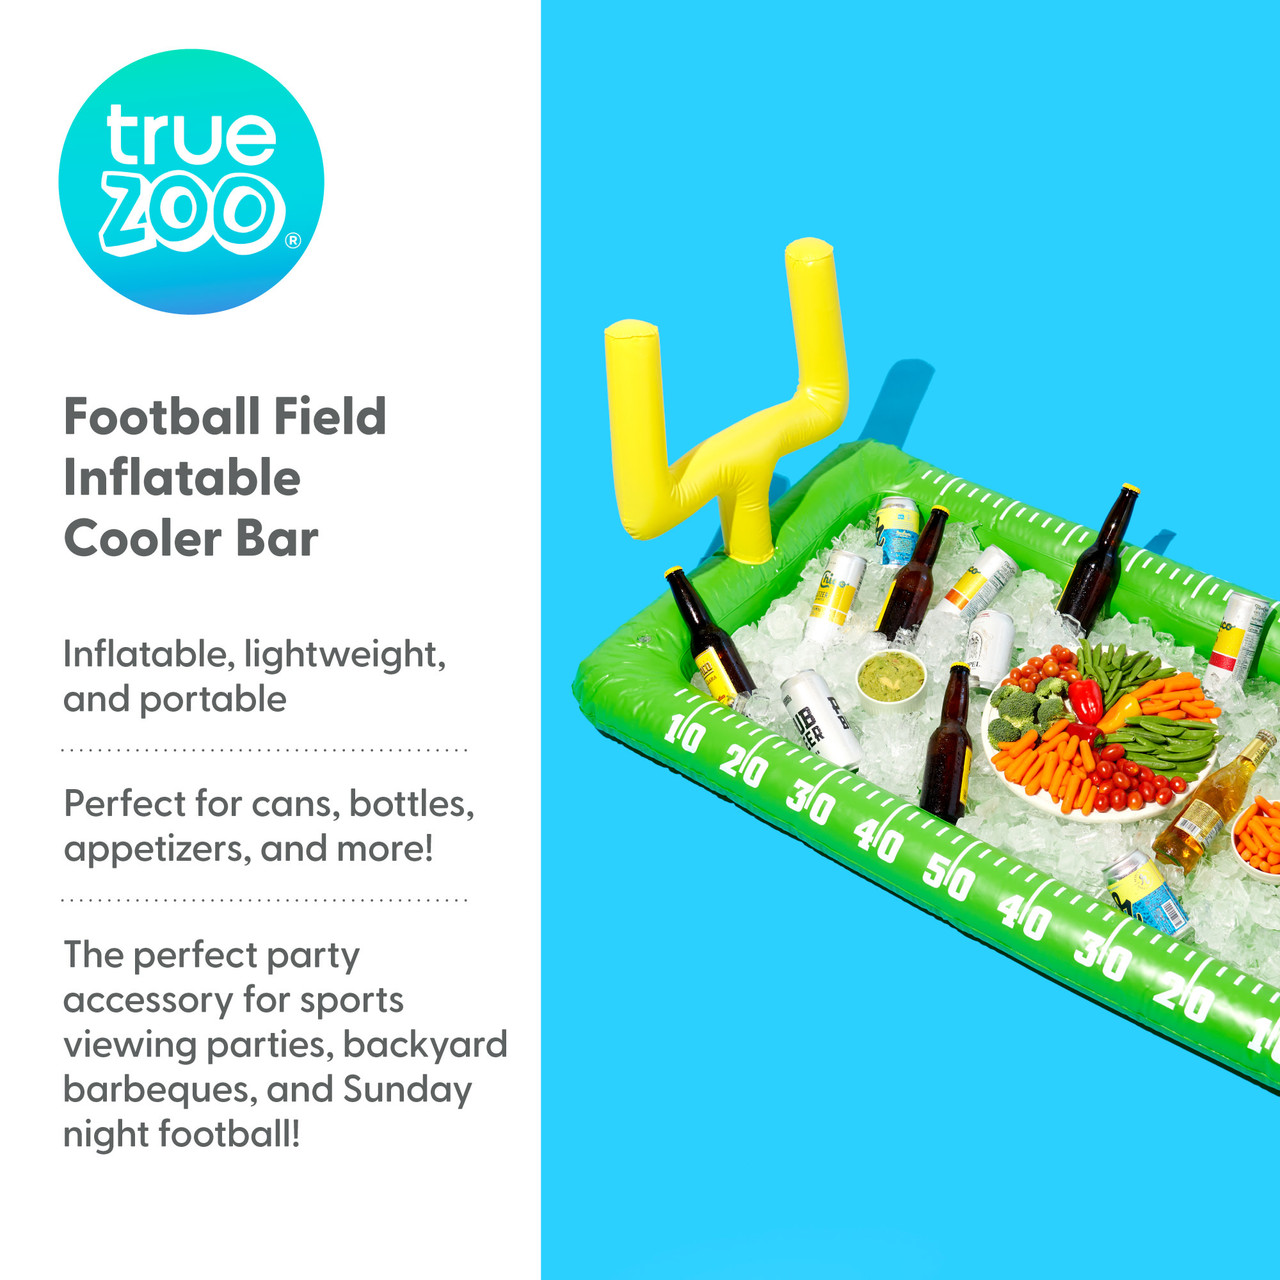 Football Field Cooler Bar by TrueZoo